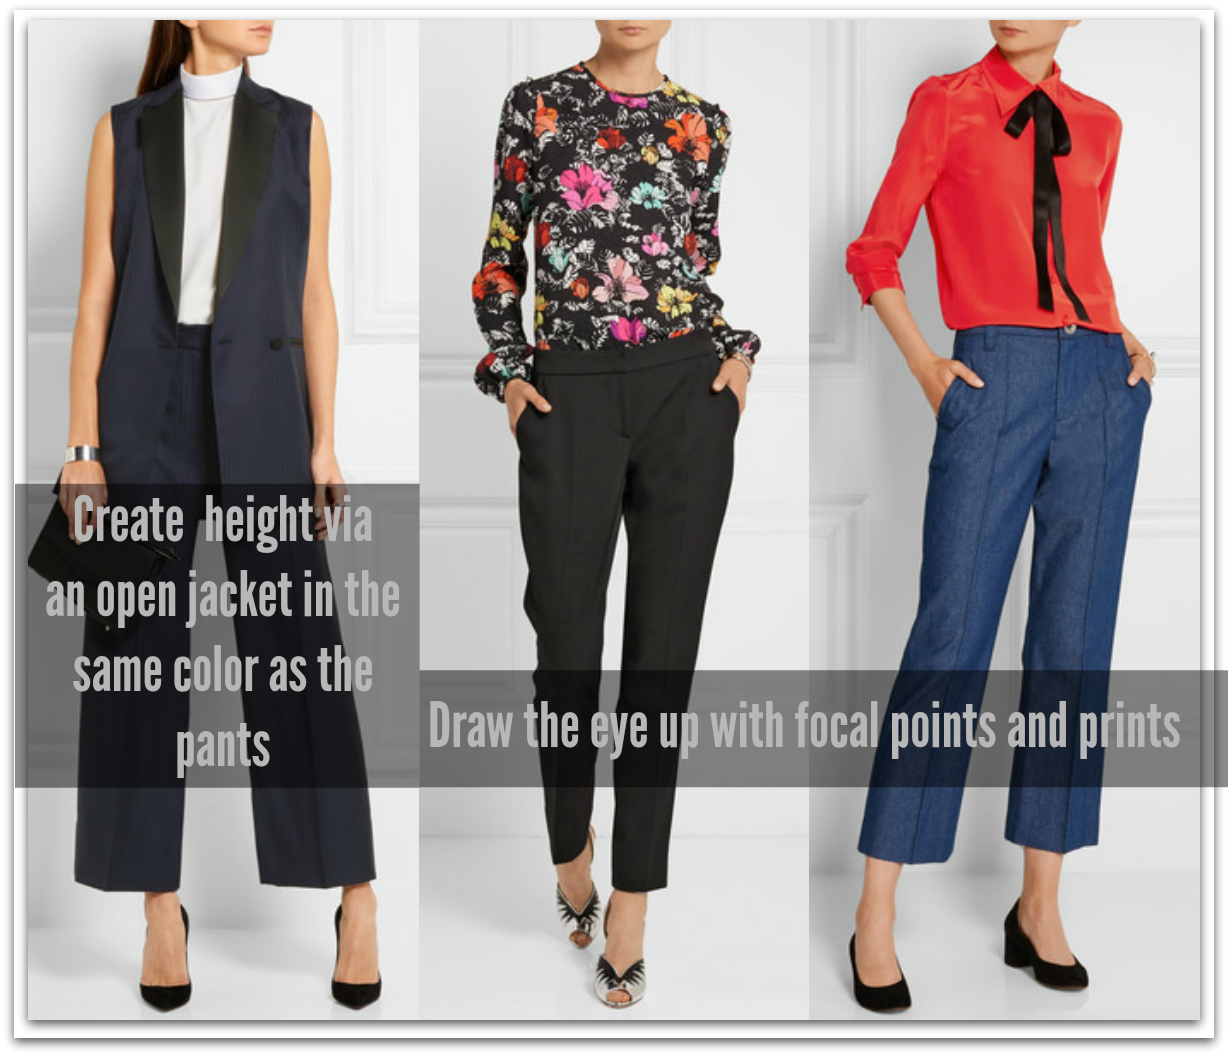 Plus Size Women's Crop & Capri Pants: Shorter-Length | Taking Shape AU